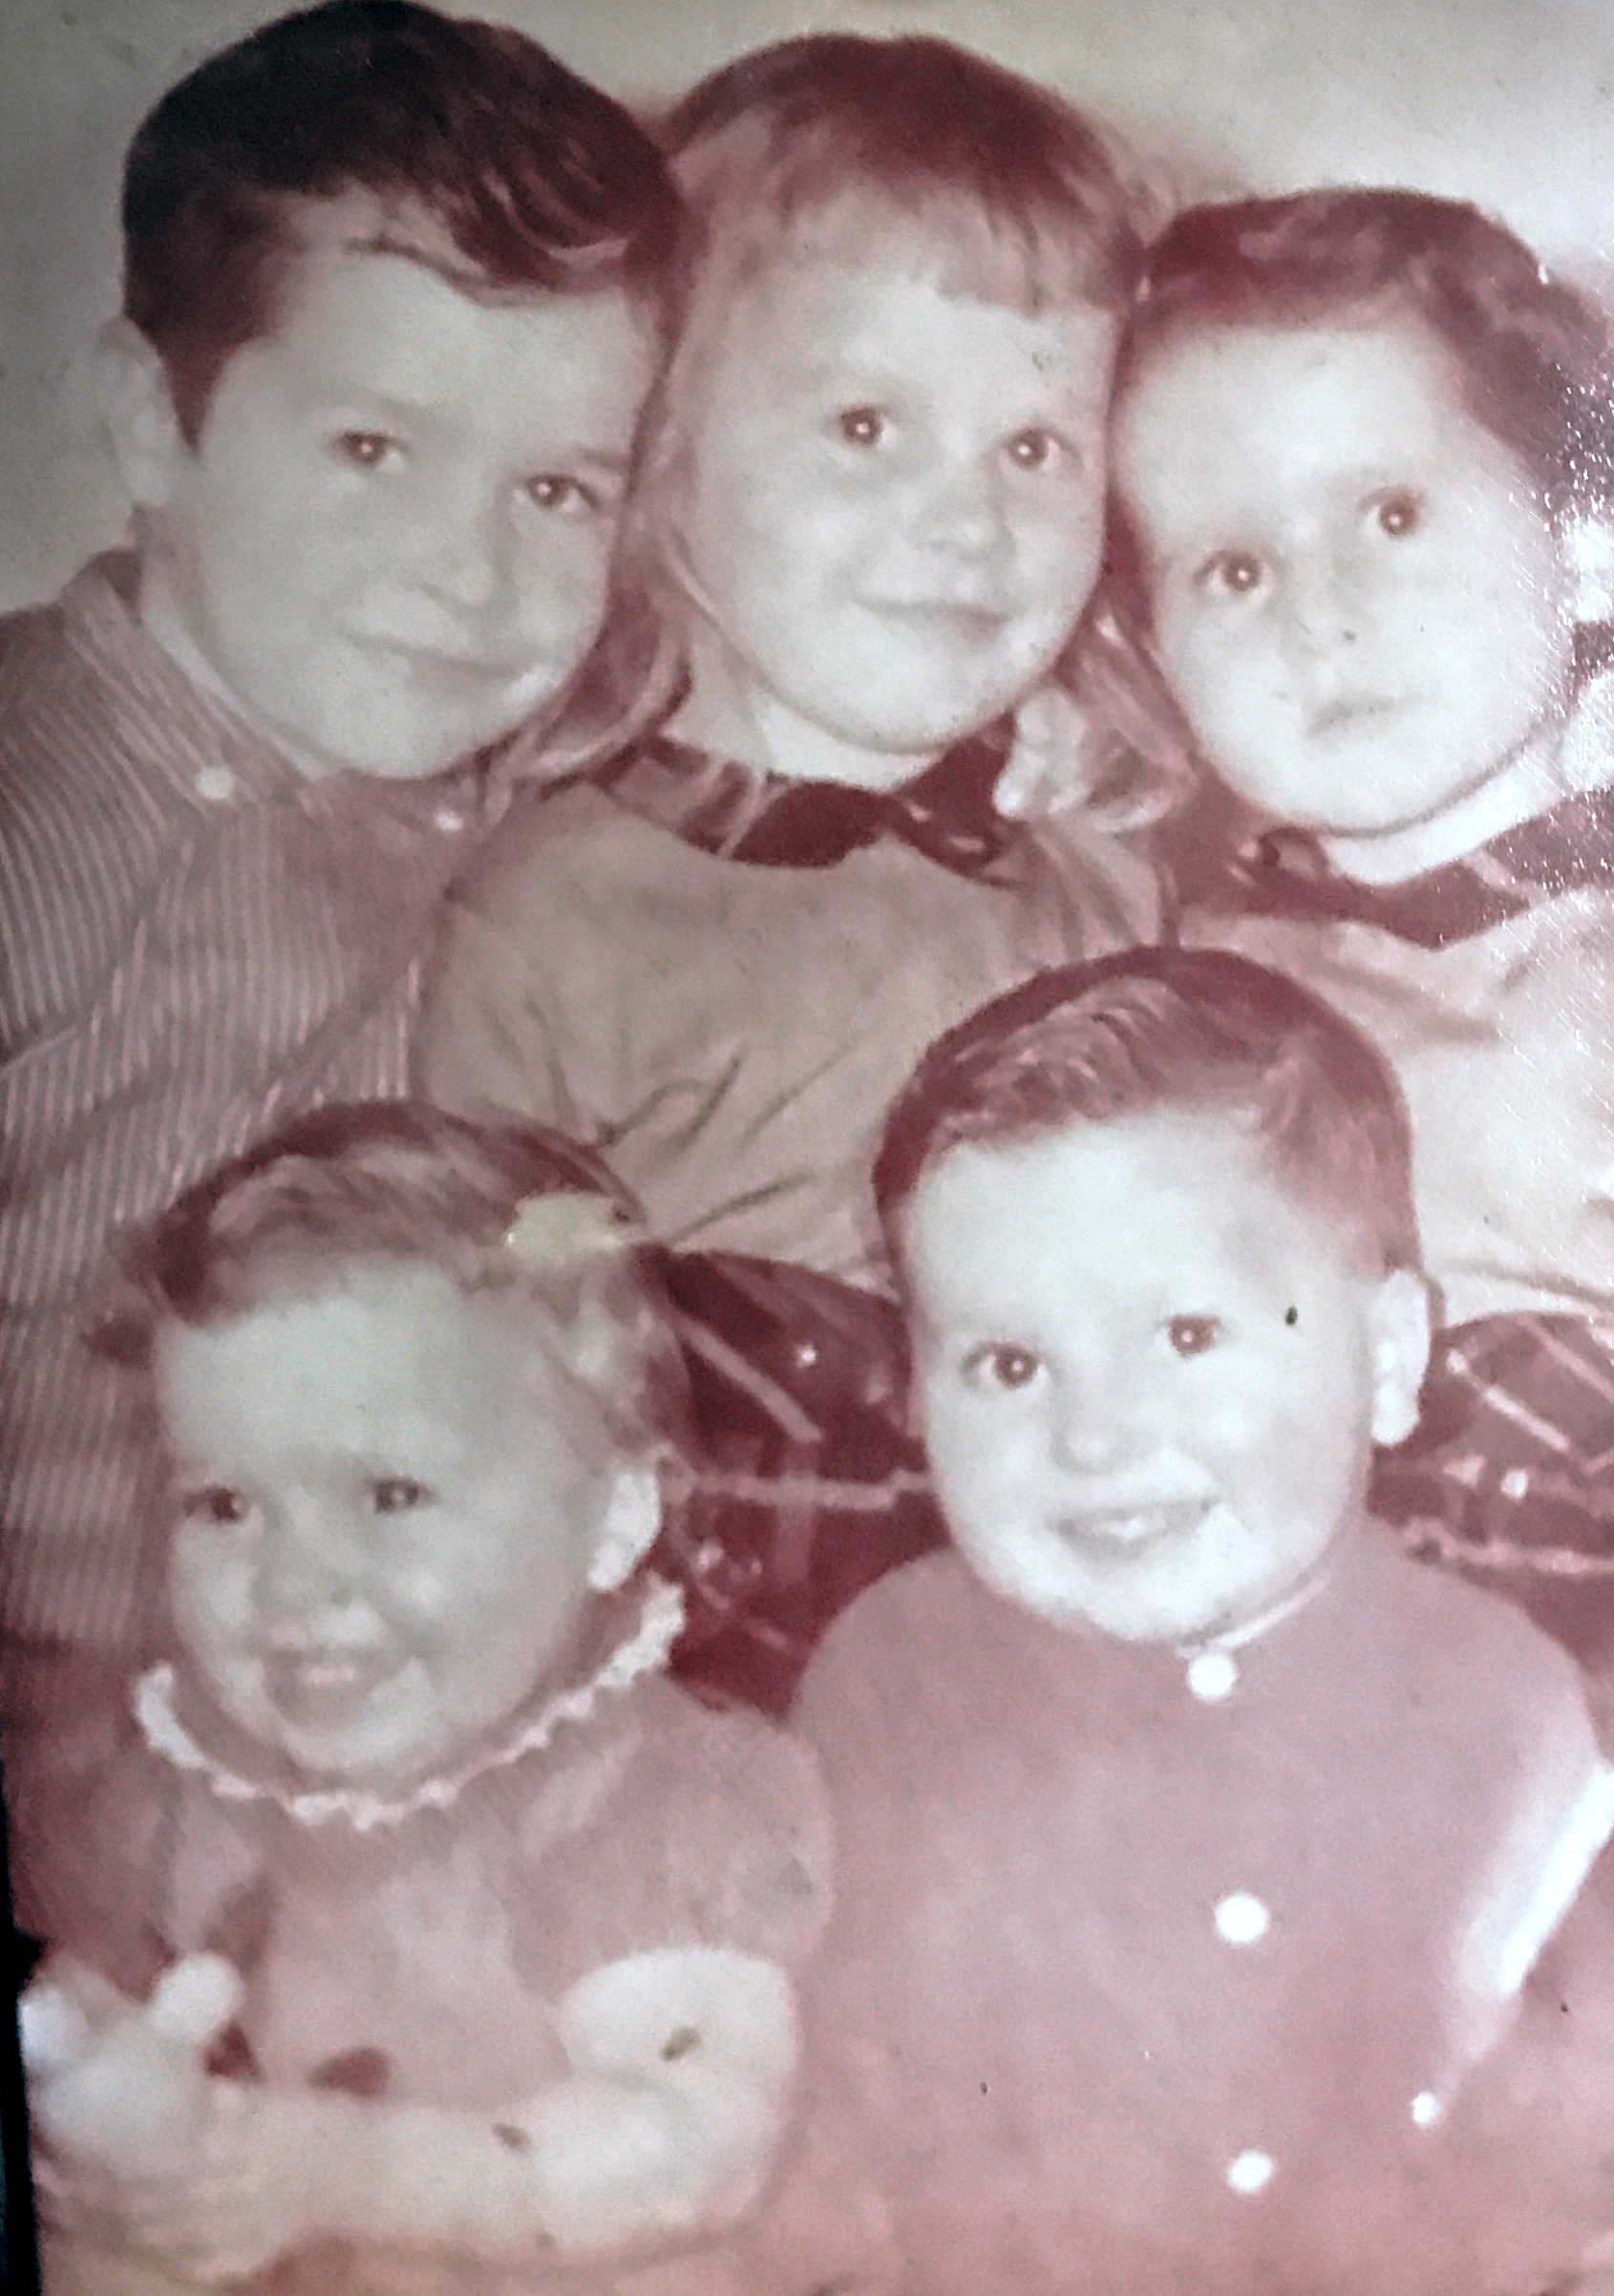 All 5 siblings apx 1958